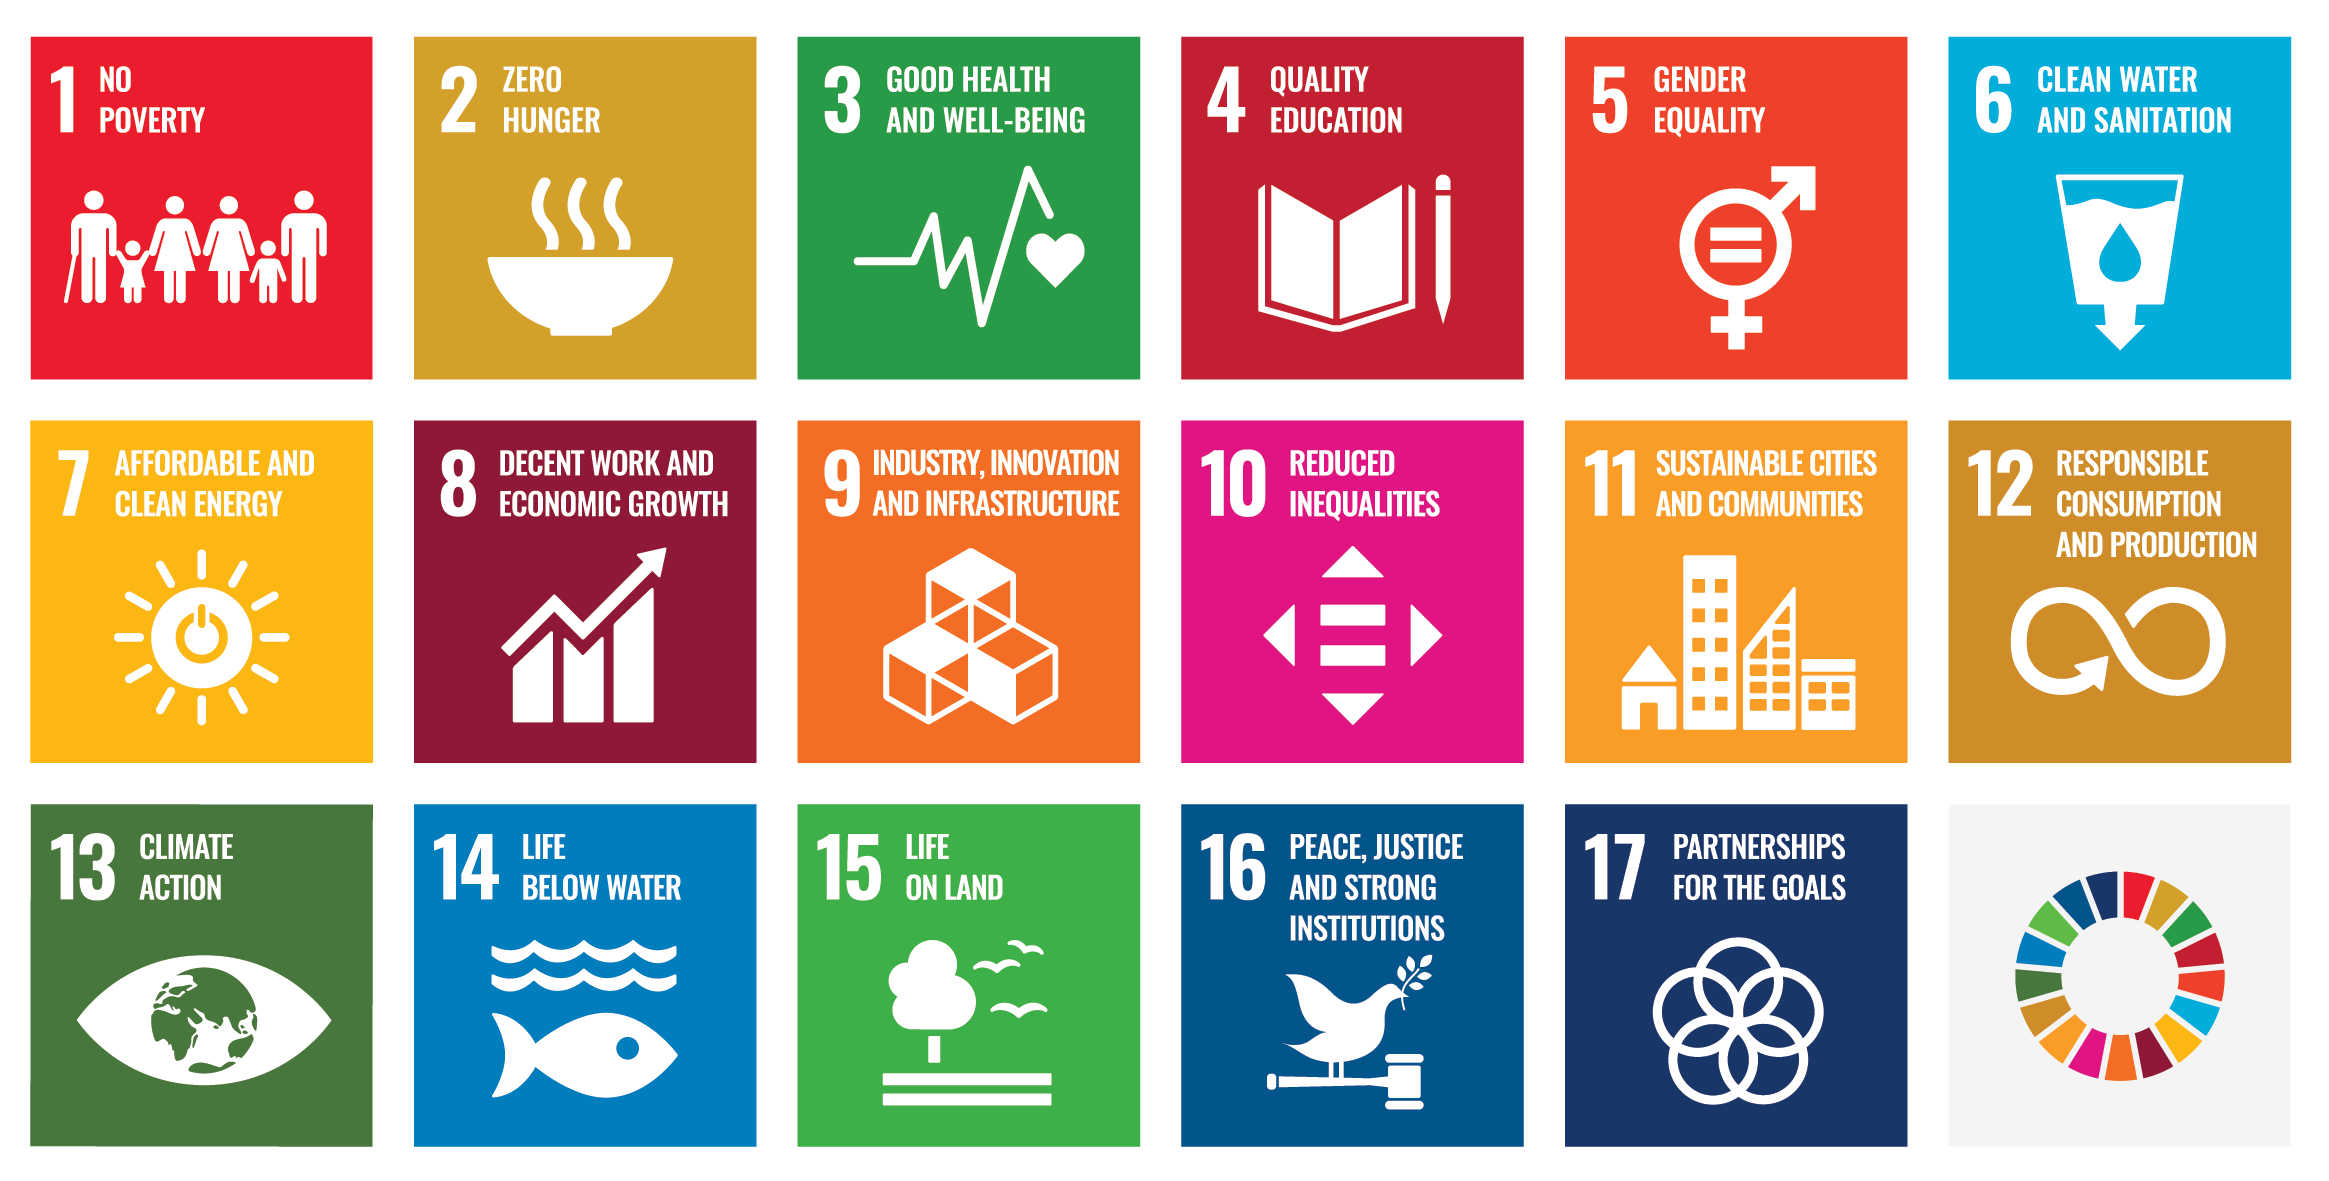 E SDG Poster 2019_without UN emblem_WEB-2